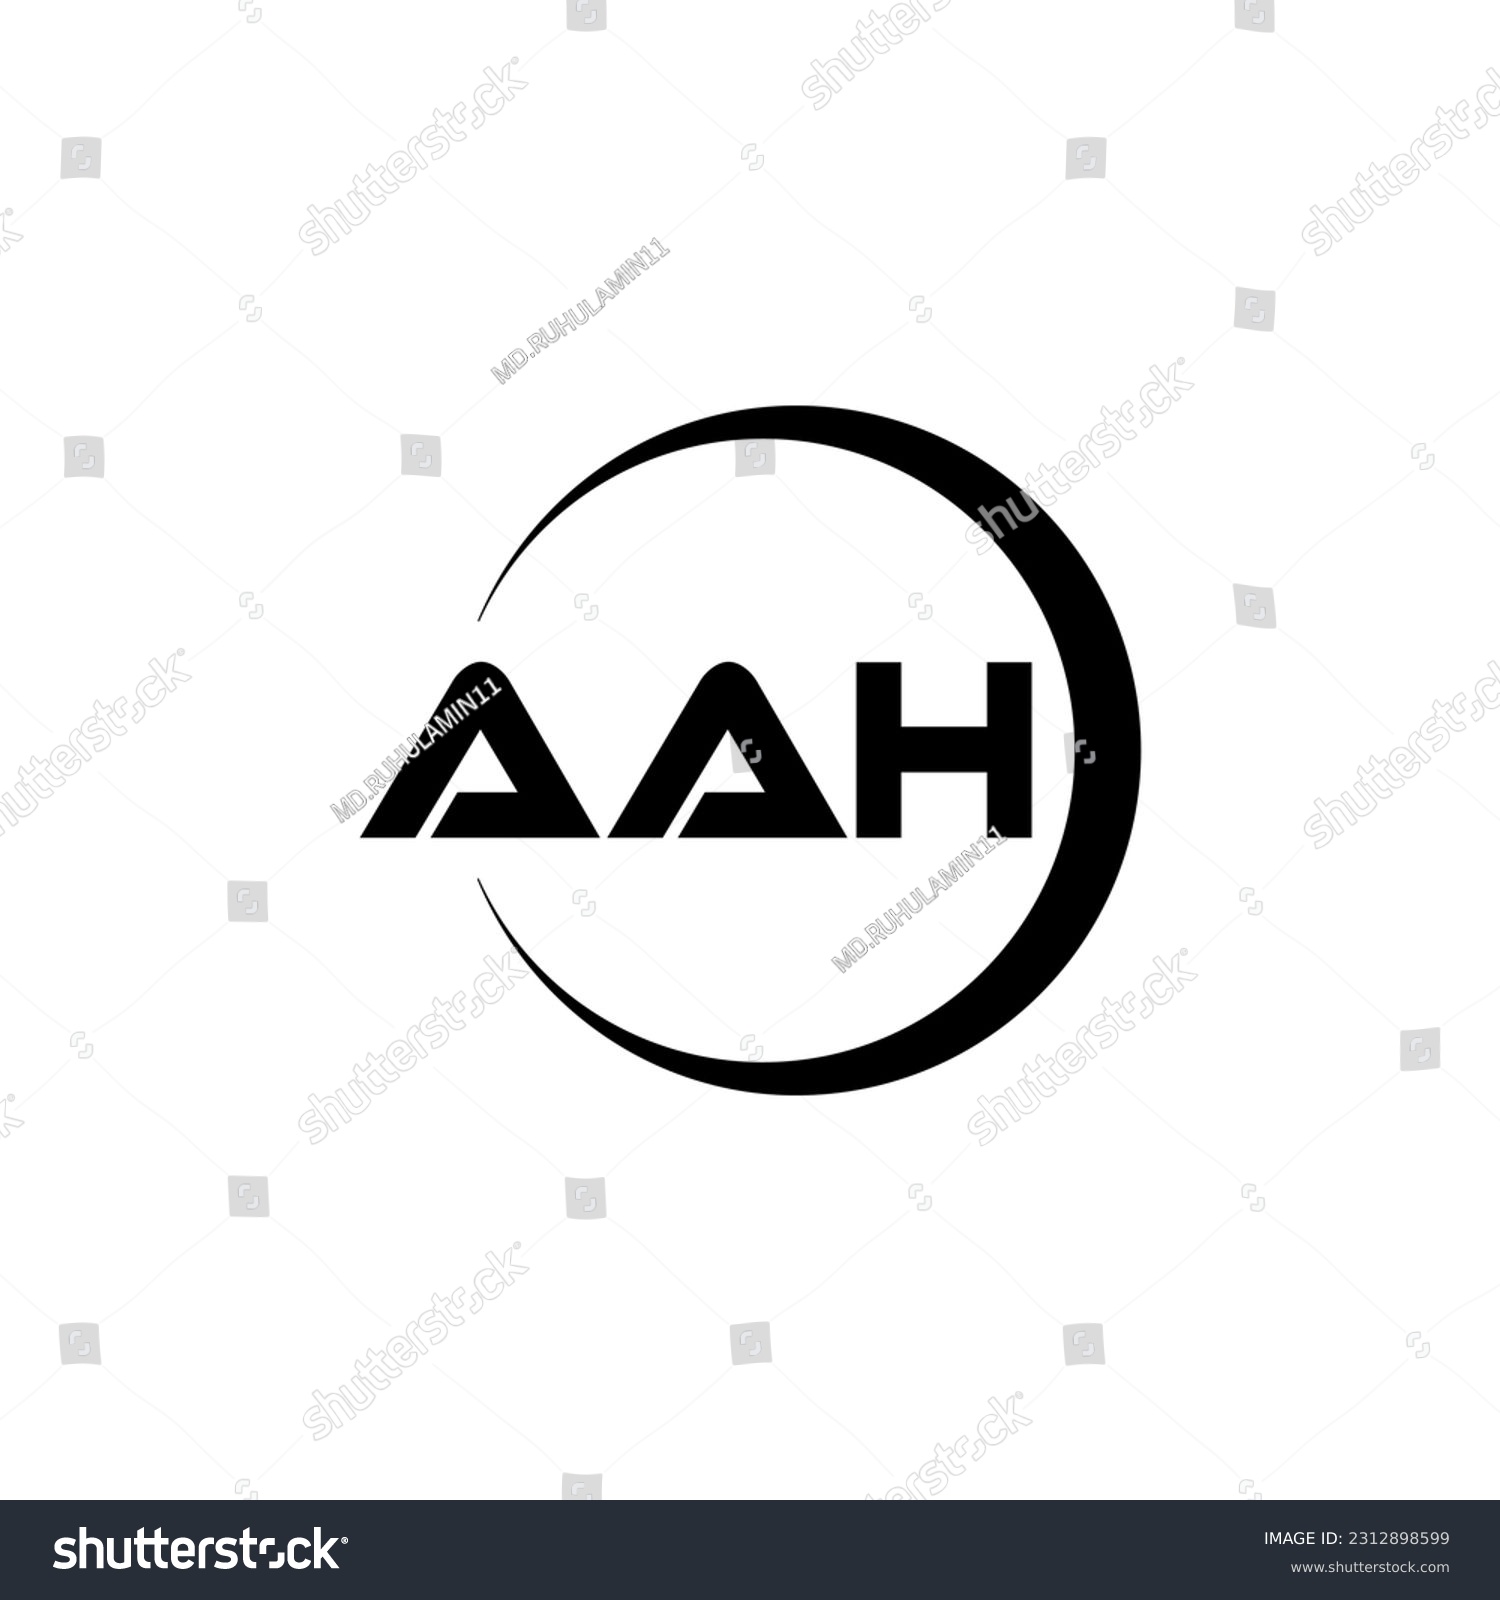 SVG of AAH letter logo design in illustration. Vector logo, calligraphy designs for logo, Poster, Invitation, etc. svg